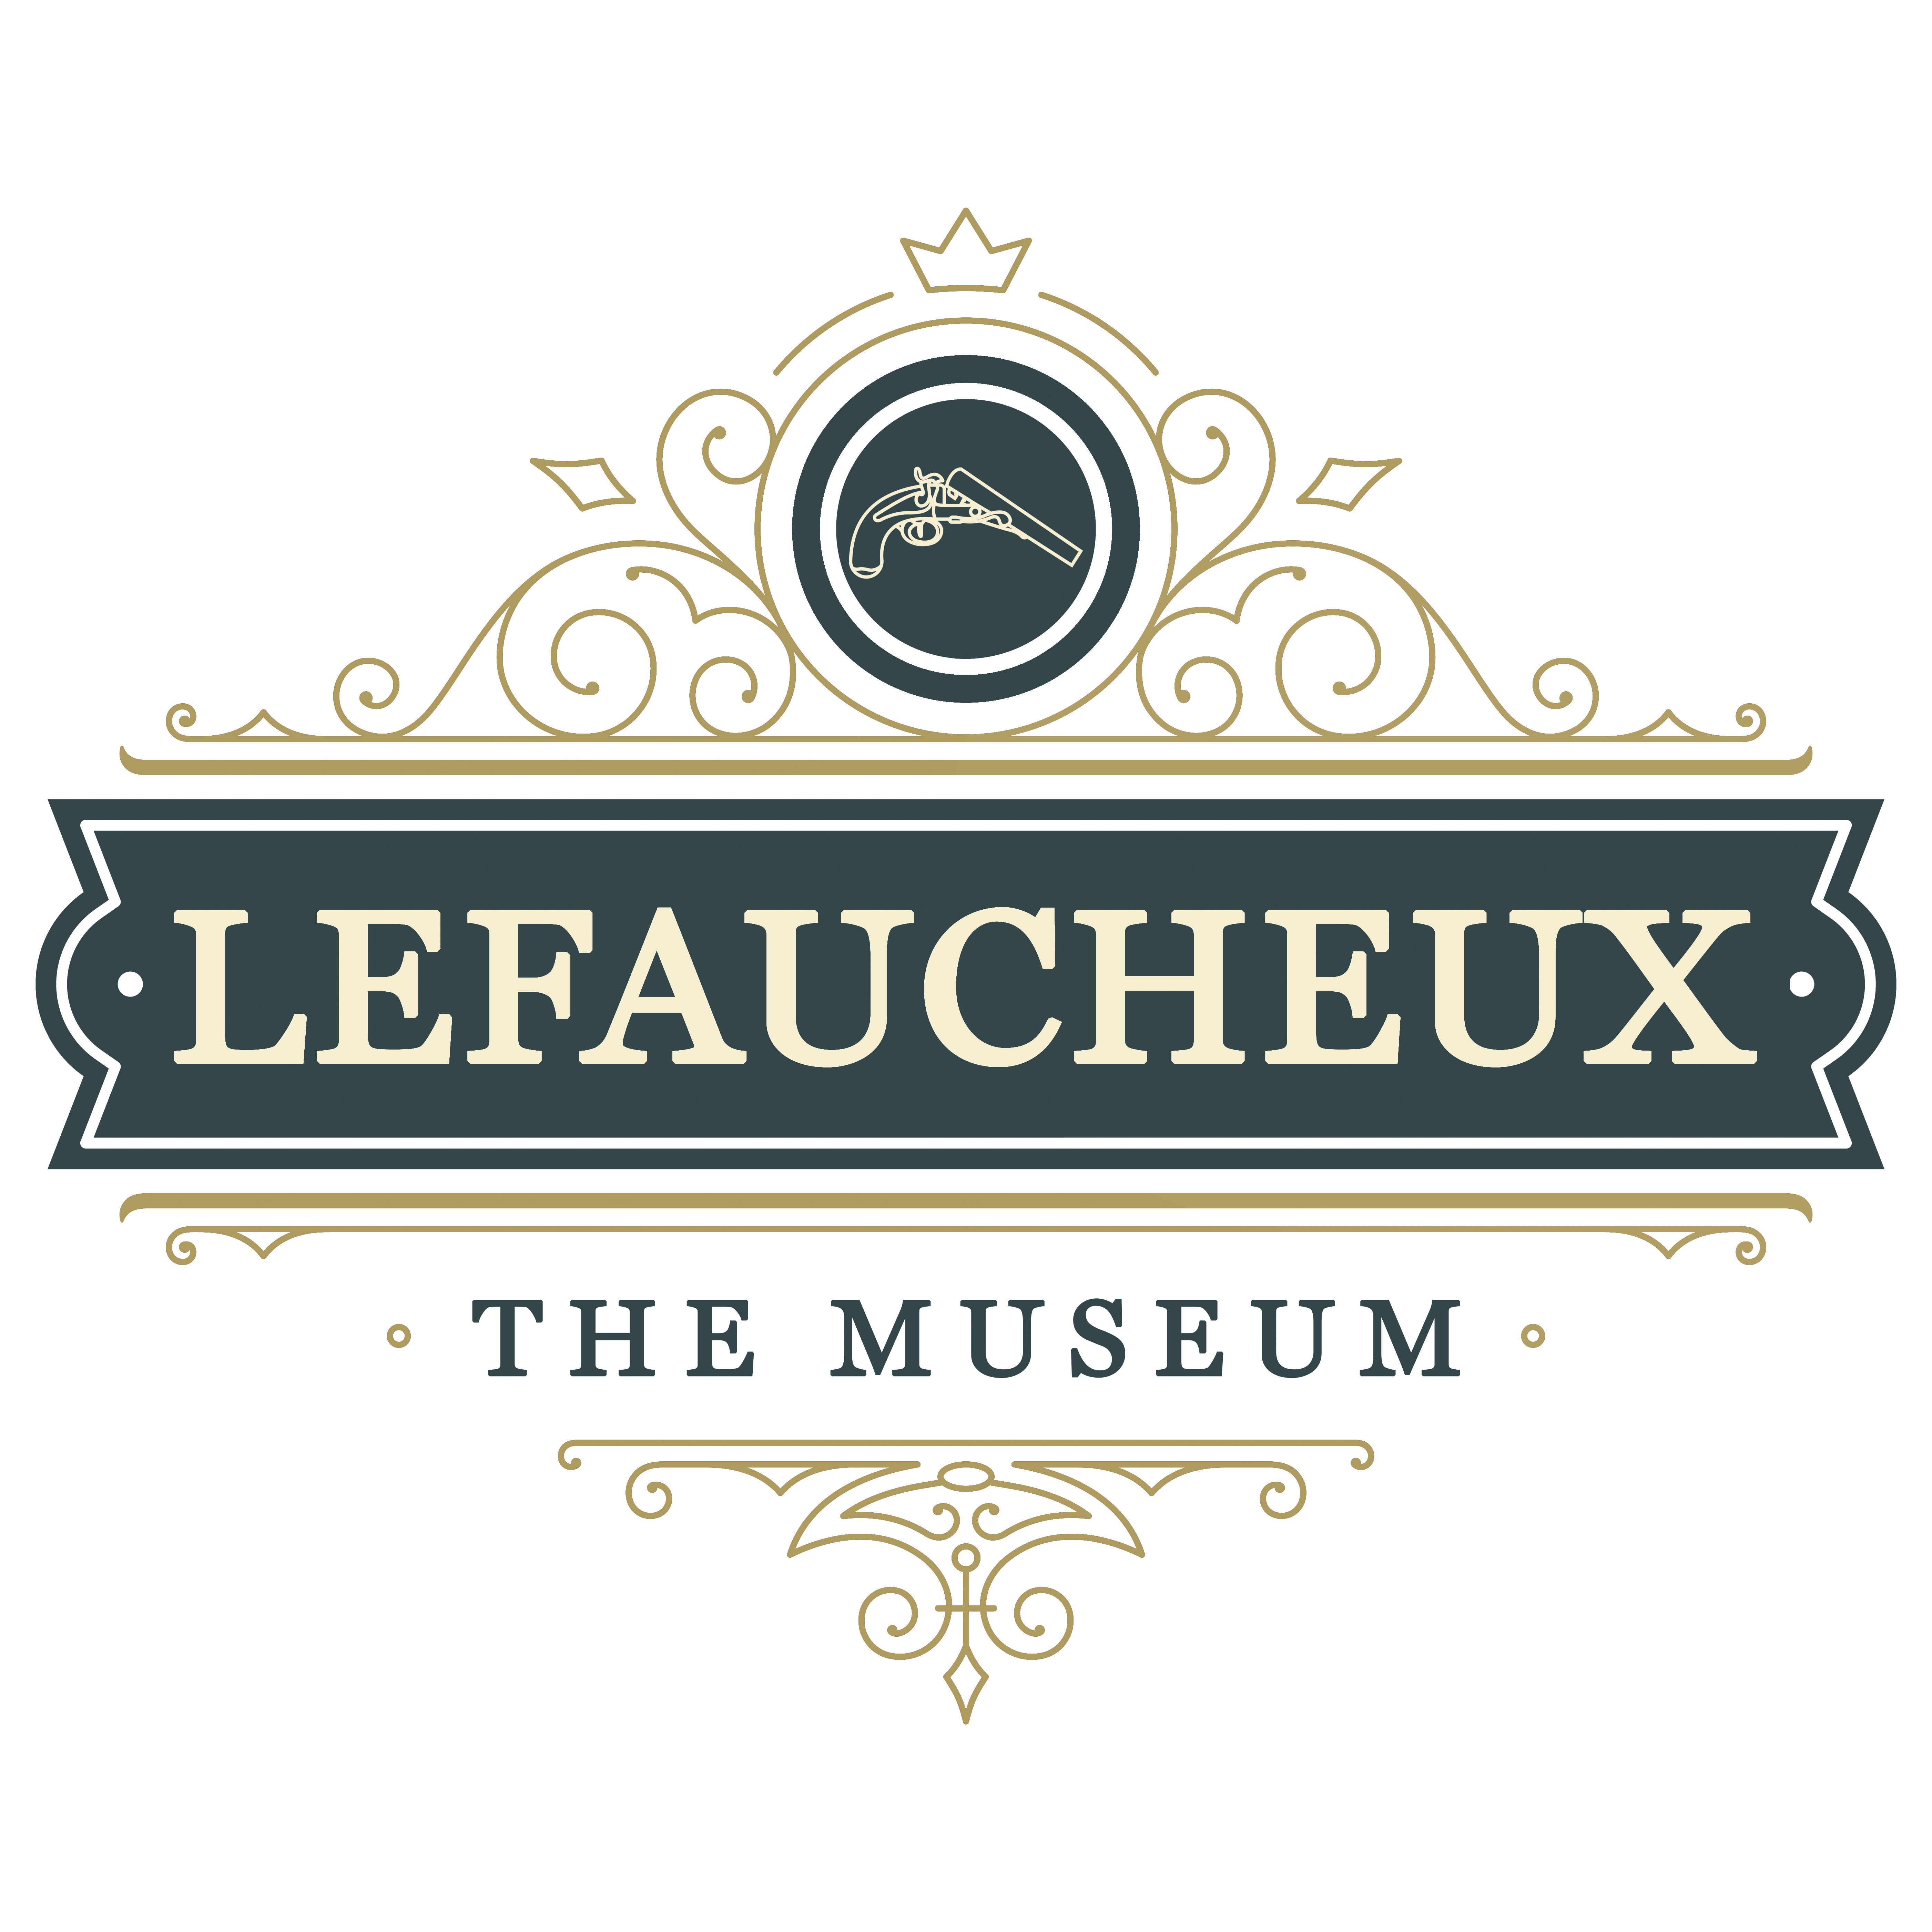 The Lefaucheux Museum - logo